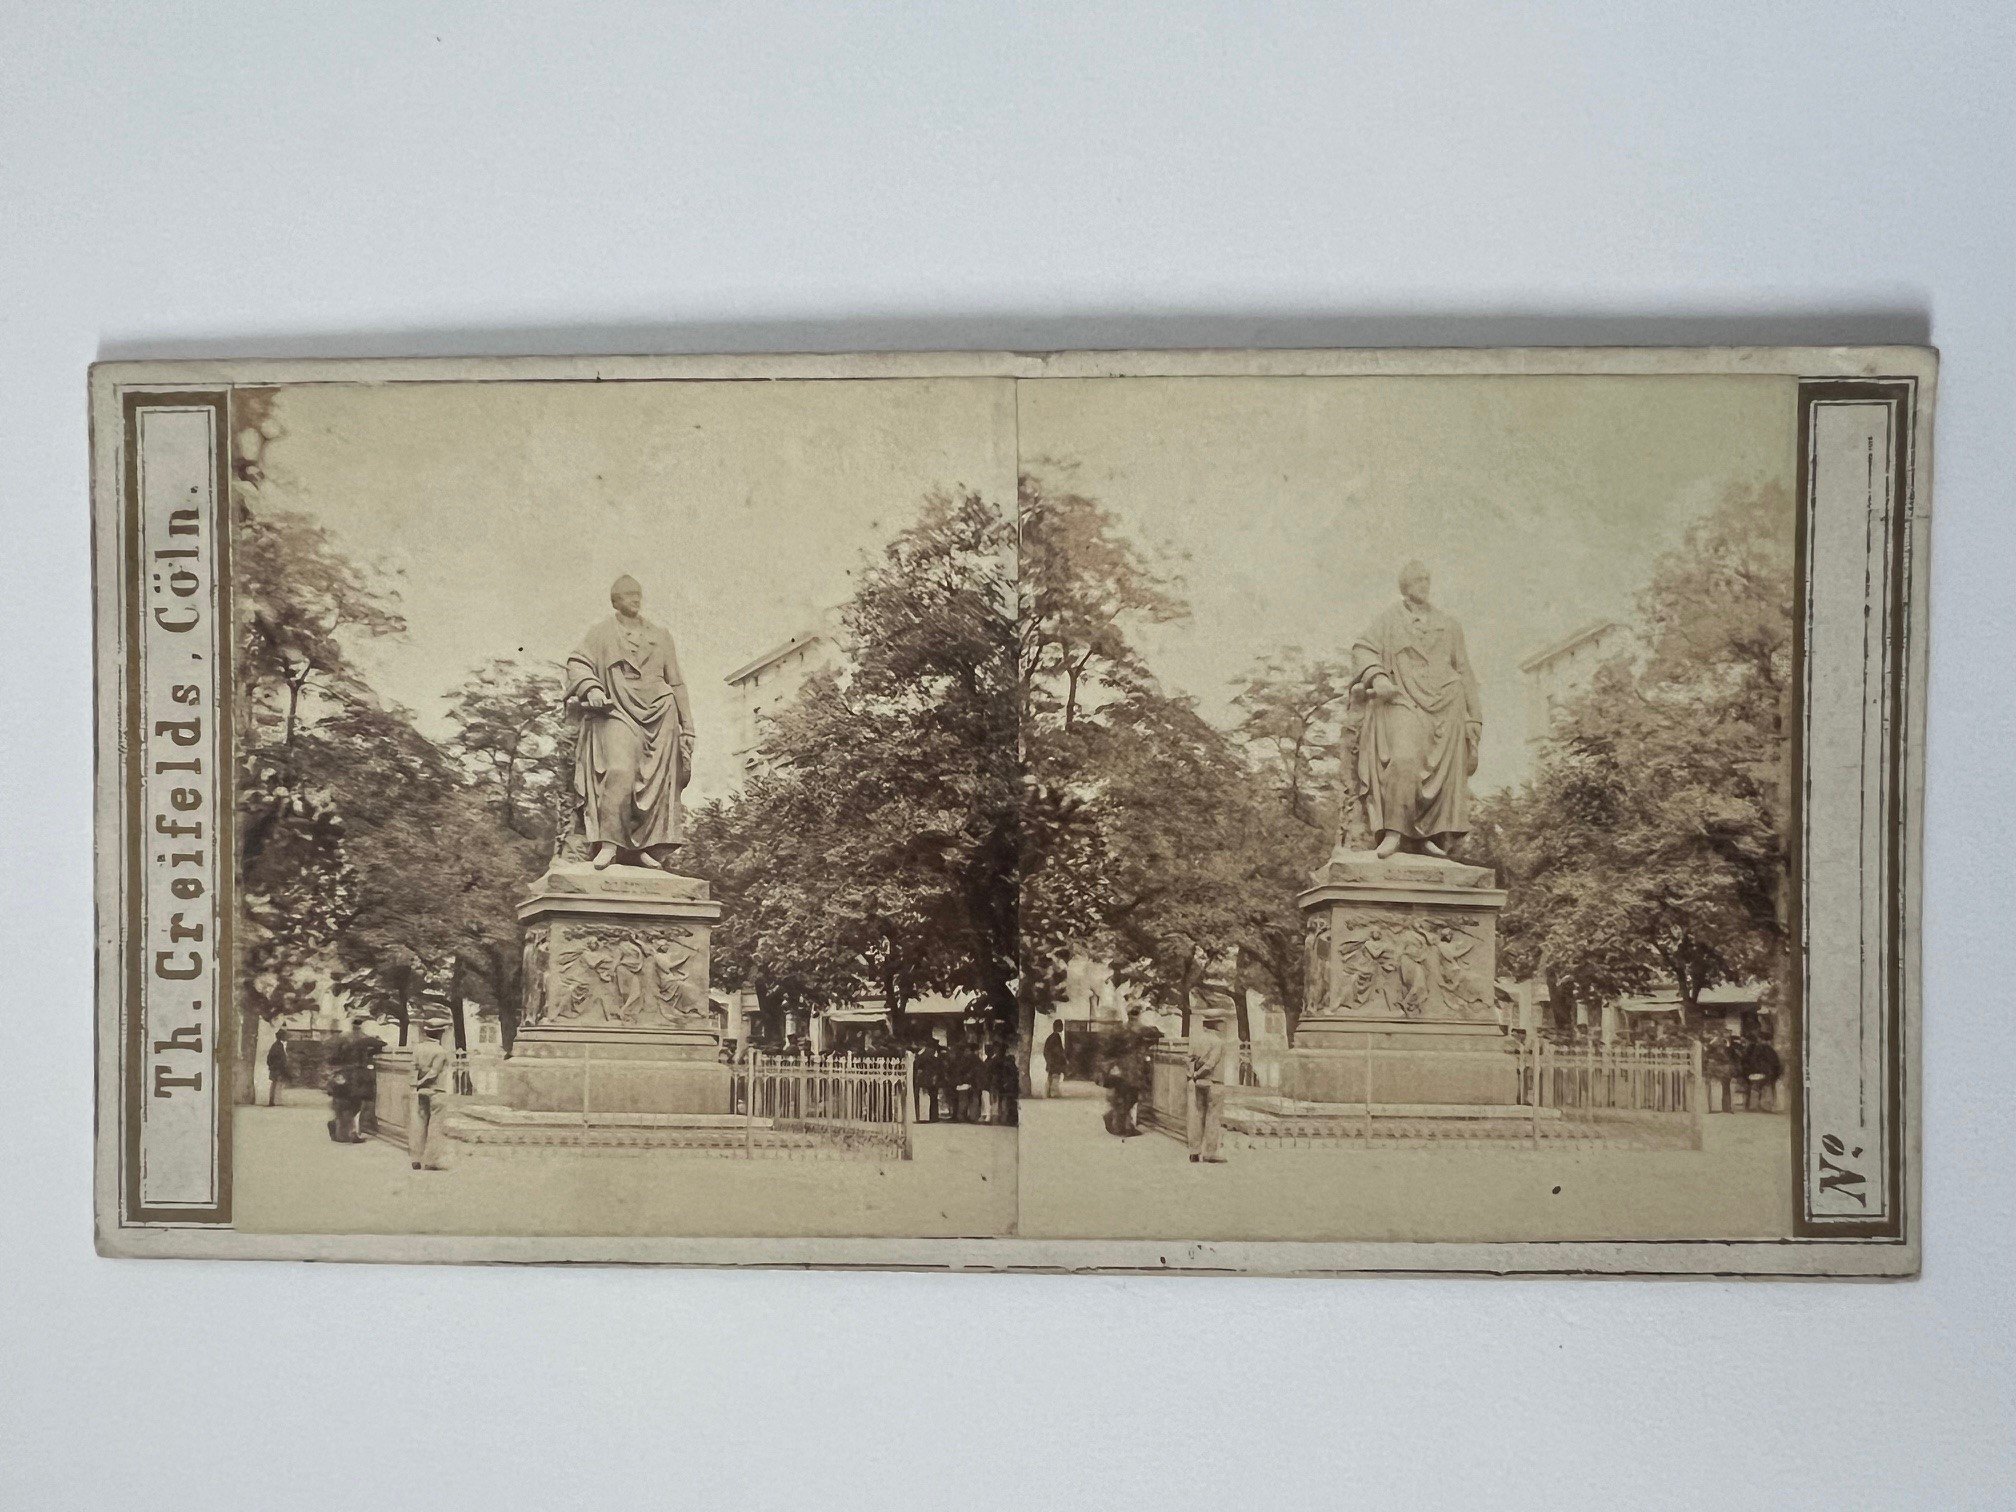 Stereobild, Theodor Creifelds, Frankfurt, Nr. 267, Göthe-Monument, ca. 1870. (Taunus-Rhein-Main - Regionalgeschichtliche Sammlung Dr. Stefan Naas CC BY-NC-SA)